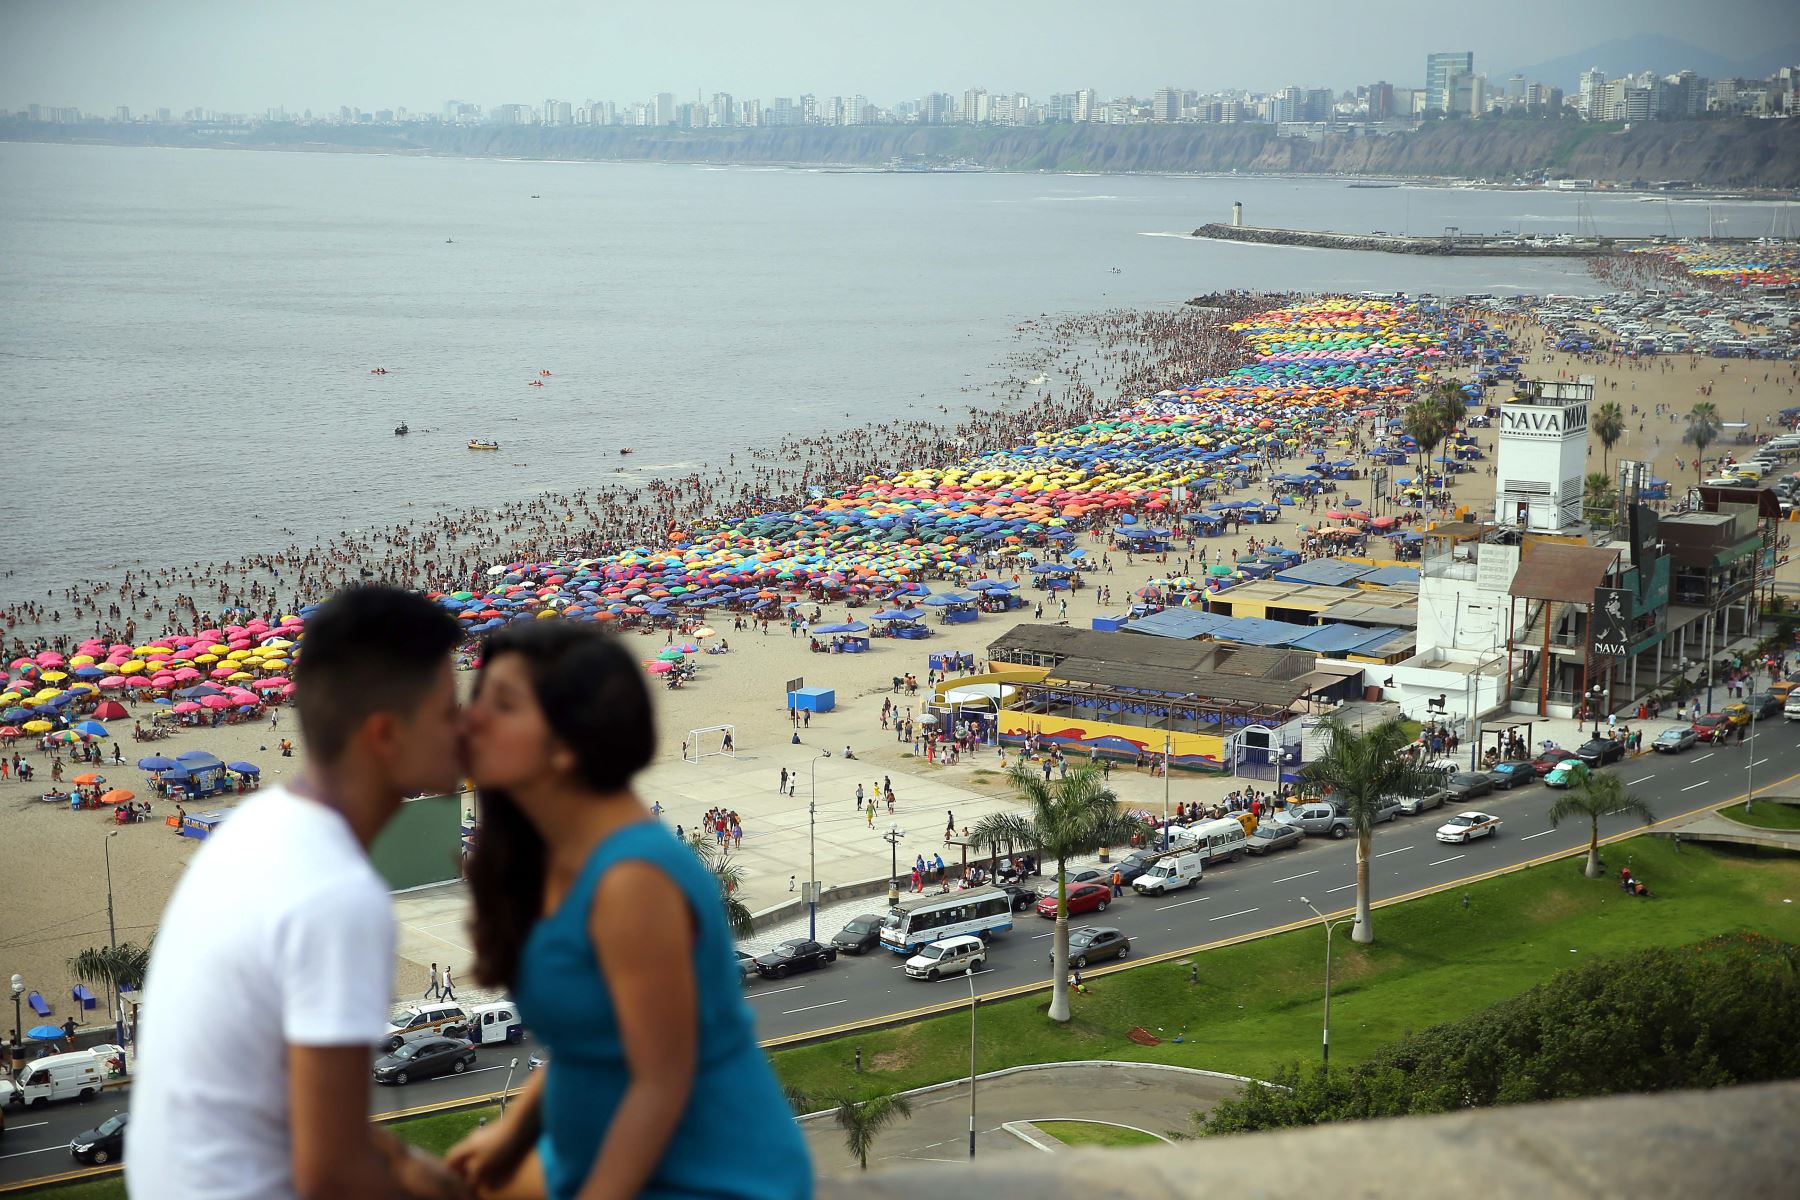 En Lima muchas parejas visitan los parques y lugares públicos, donde pasan un momento romántico. Foto: ANDINA/Luis Iparraguirre